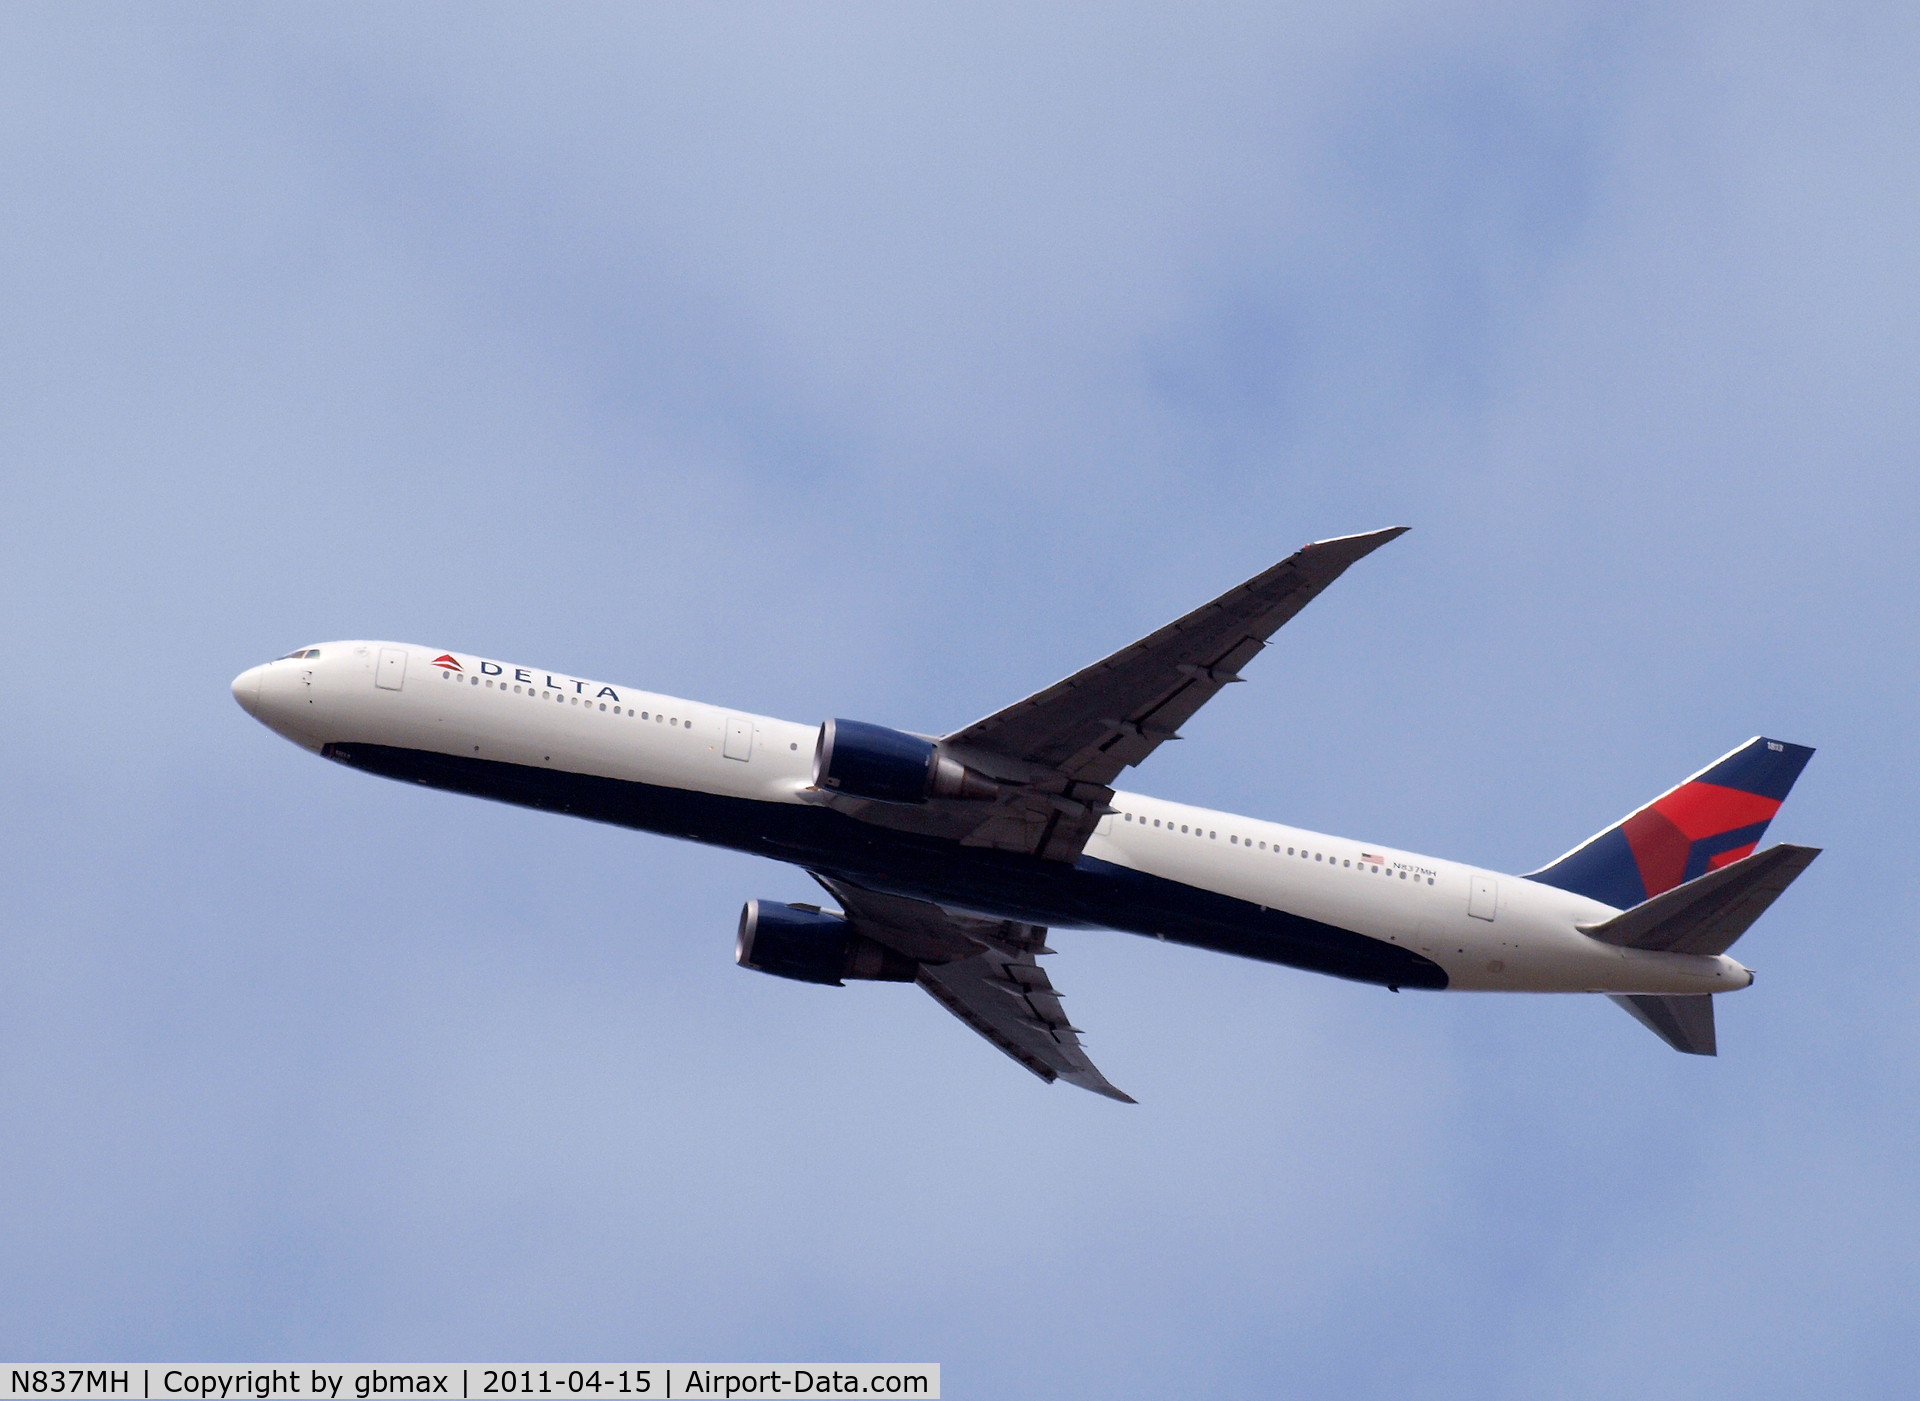 N837MH, 2000 Boeing 767-432/ER C/N 29710, Flying over Mineola, NY, going to a landing at JFK